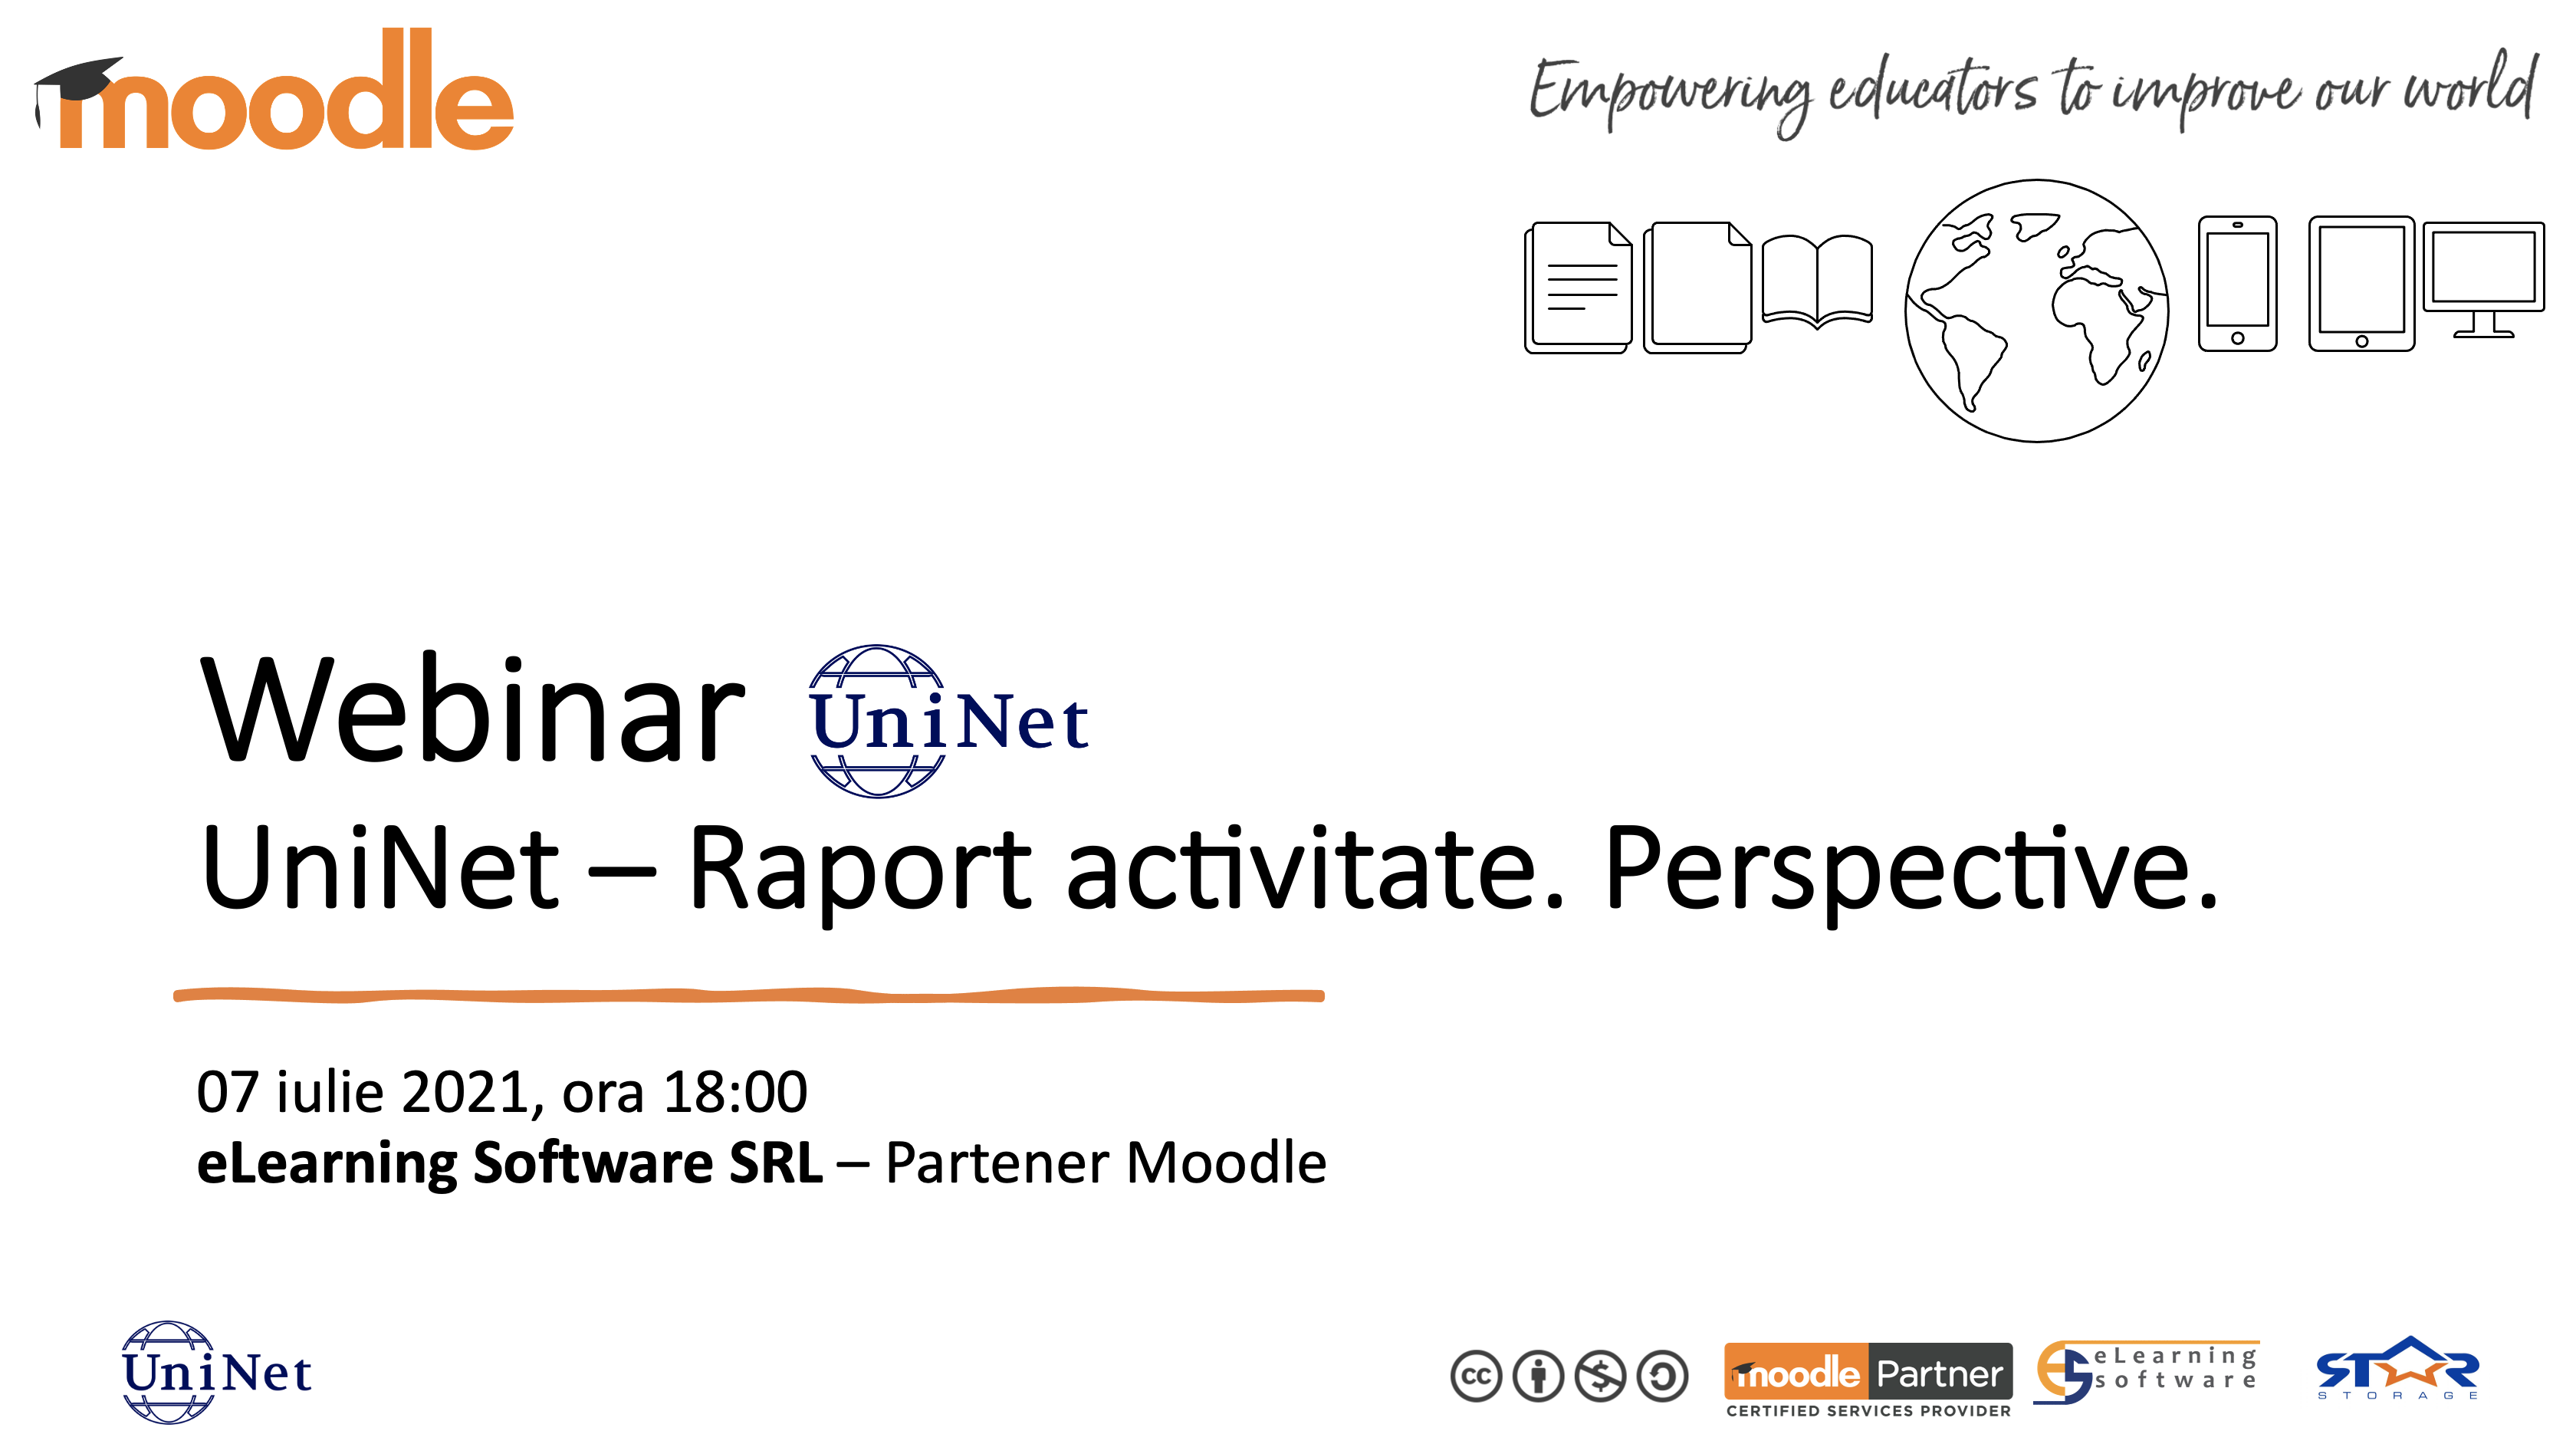 Webinar. UniNet - Raport activitate. Perspective.